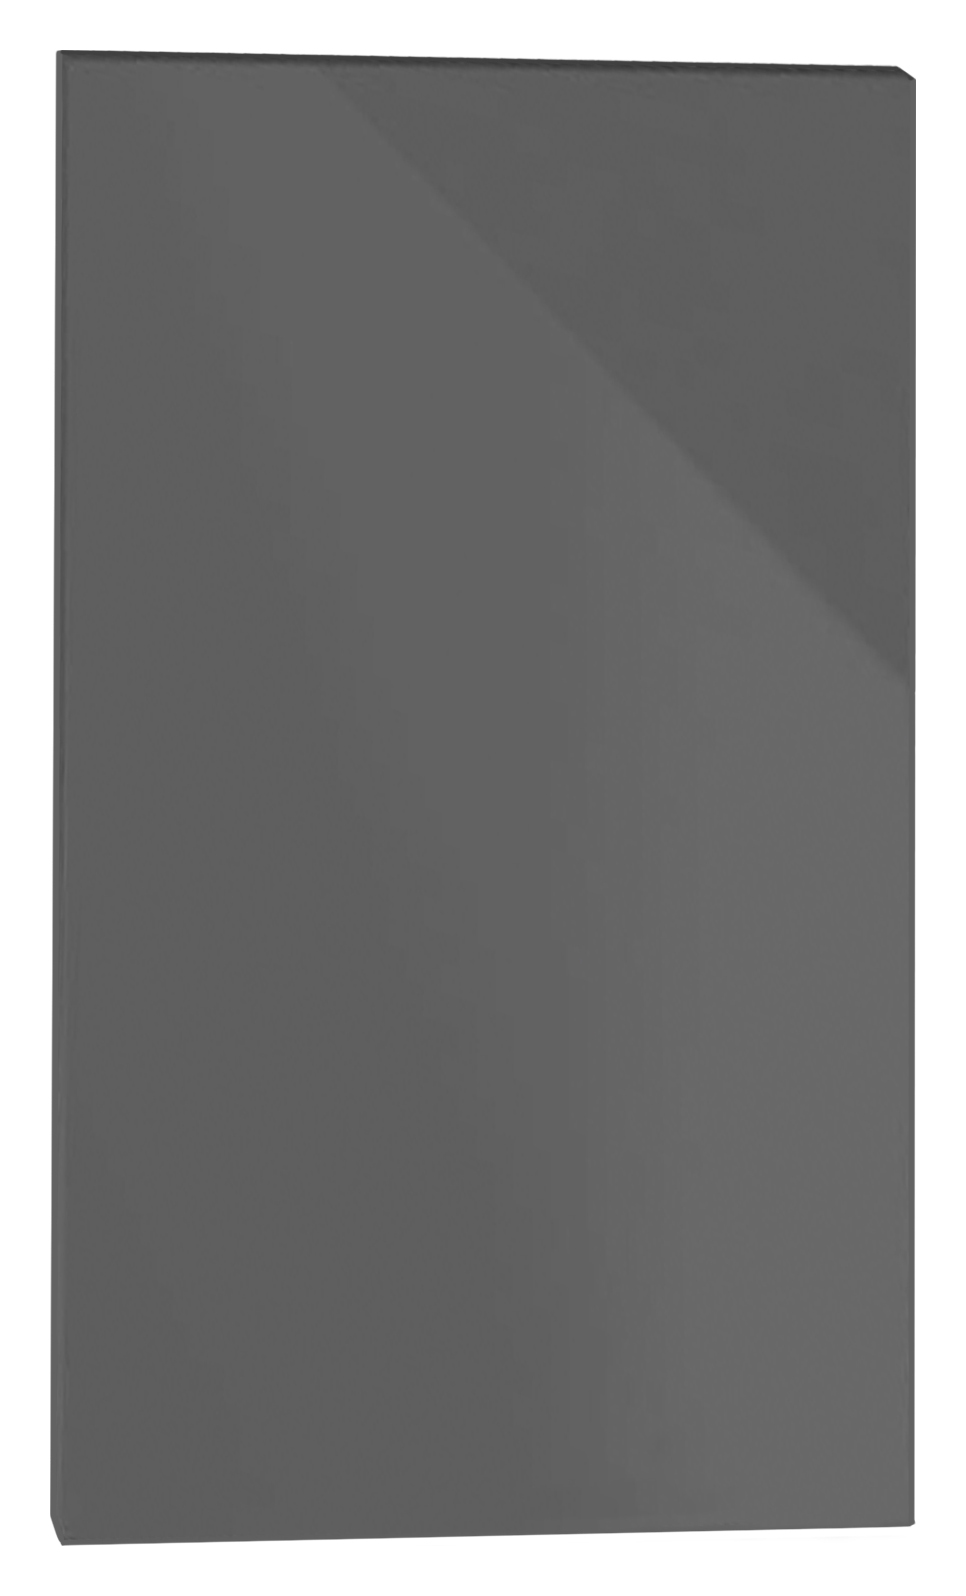 Image of Orlando Dark Grey Gloss Slab Appliance Fascia - 450 x 731mm